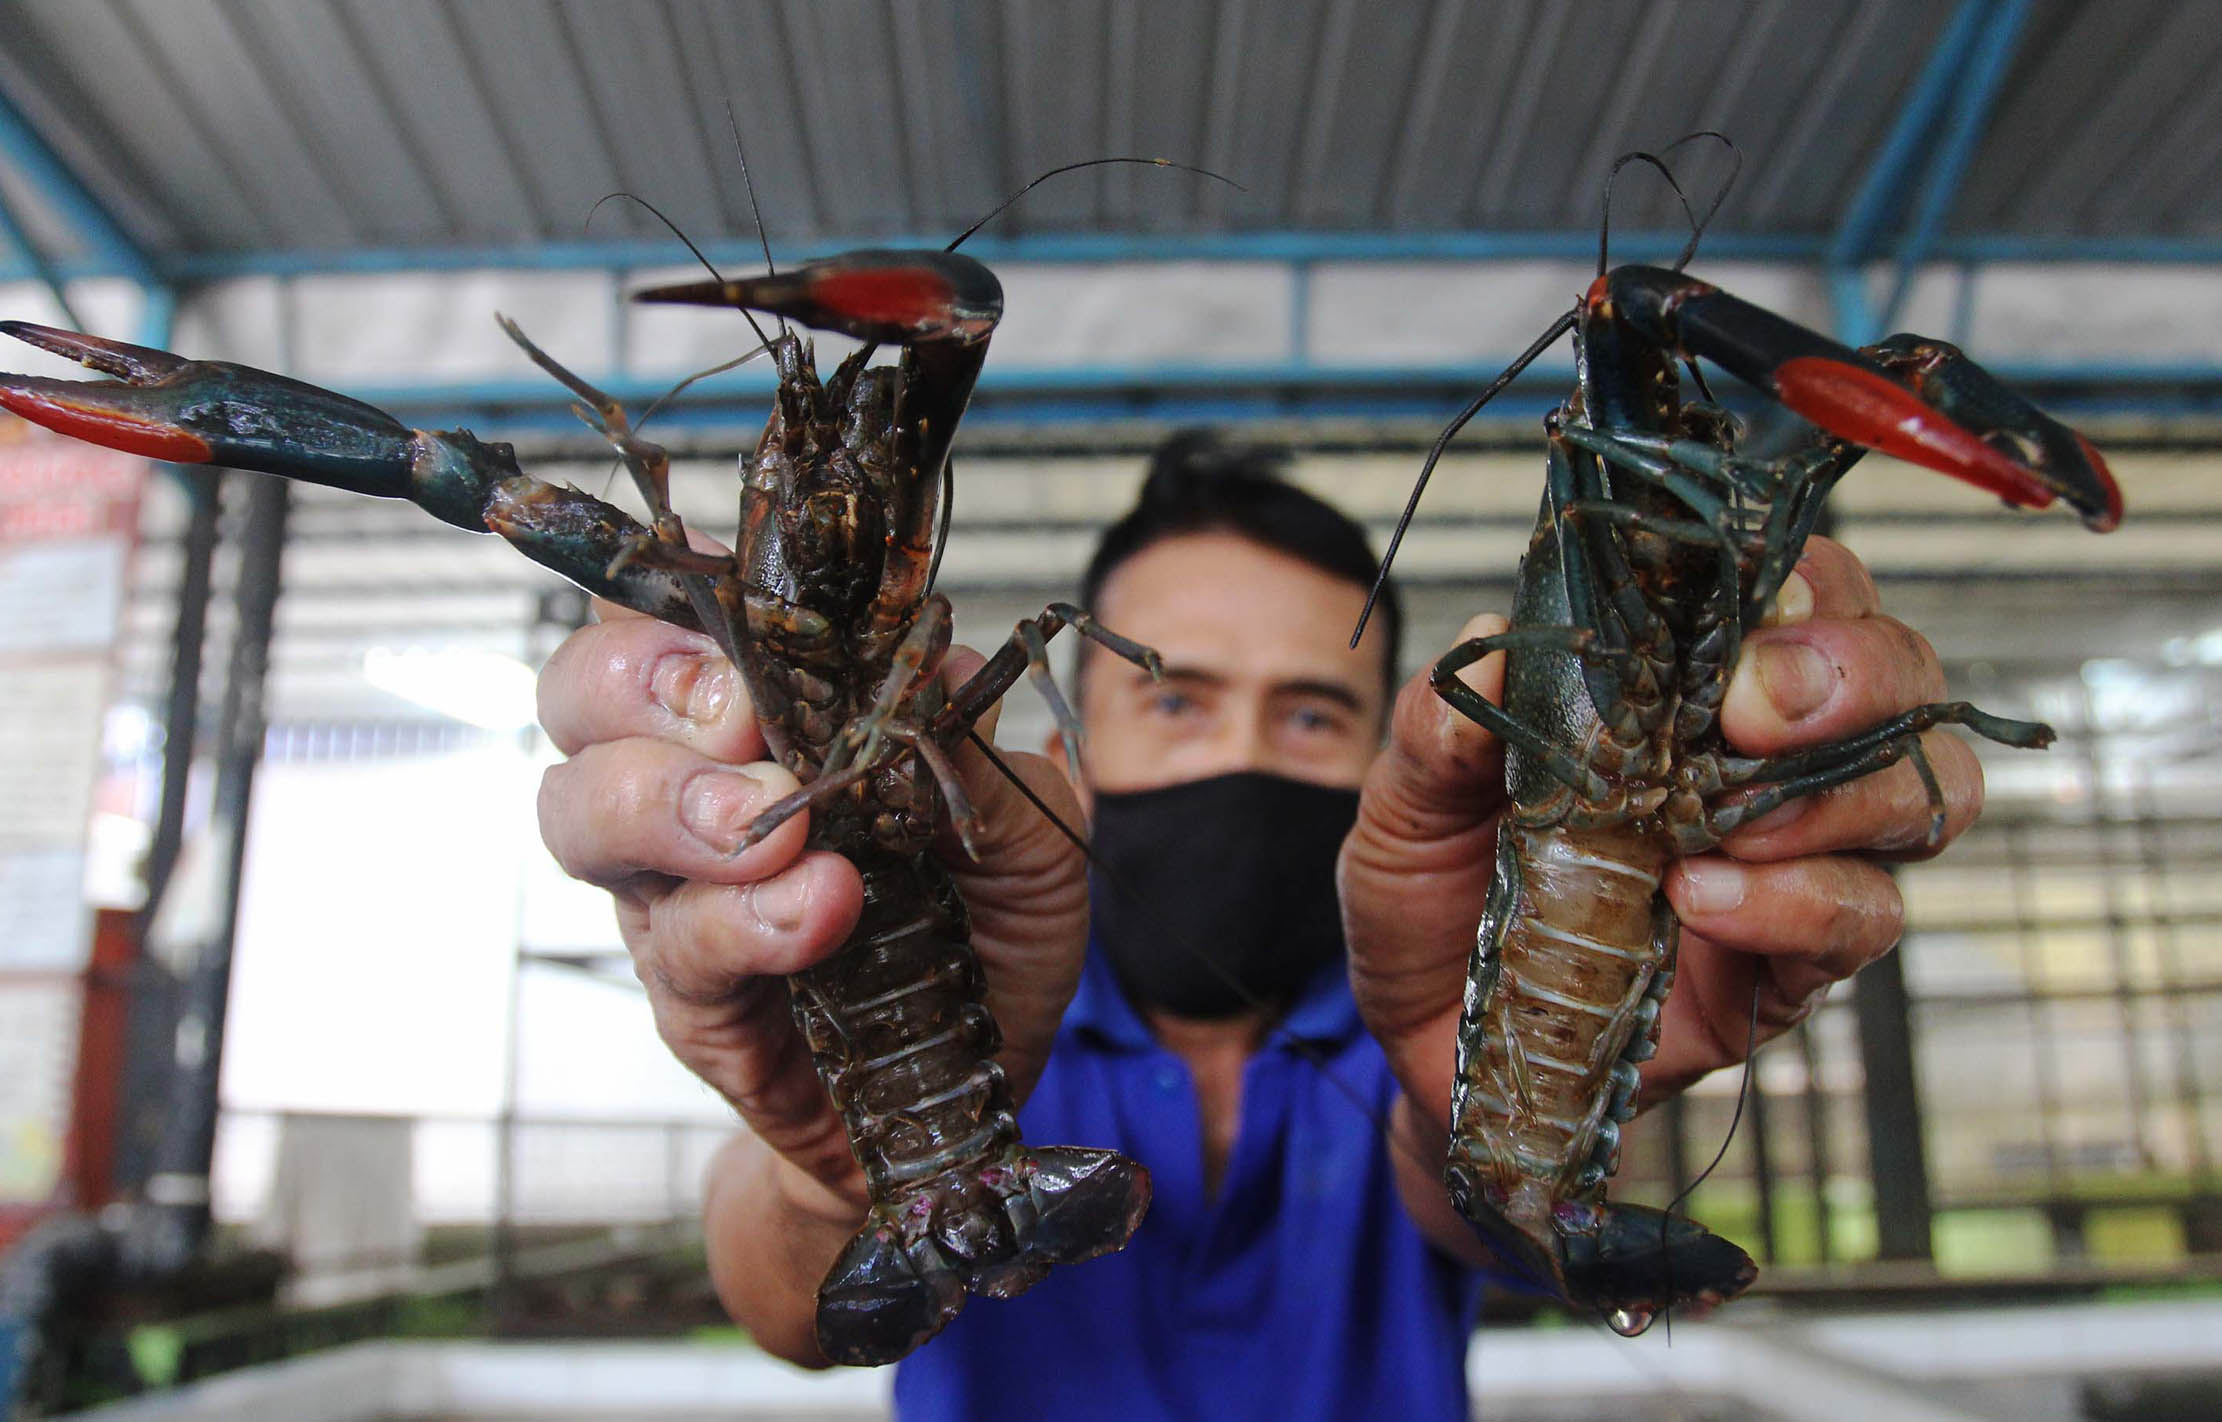 Petani lobster air tawar menunjukkan lobster siap di jual ditempat budidaya lobster air tawar BFC Mini Farm dikawasan Ciputat Tangerang Selatan , Senin 11 Oktober 2021. Foto Panji Asmoro/TrenAsia